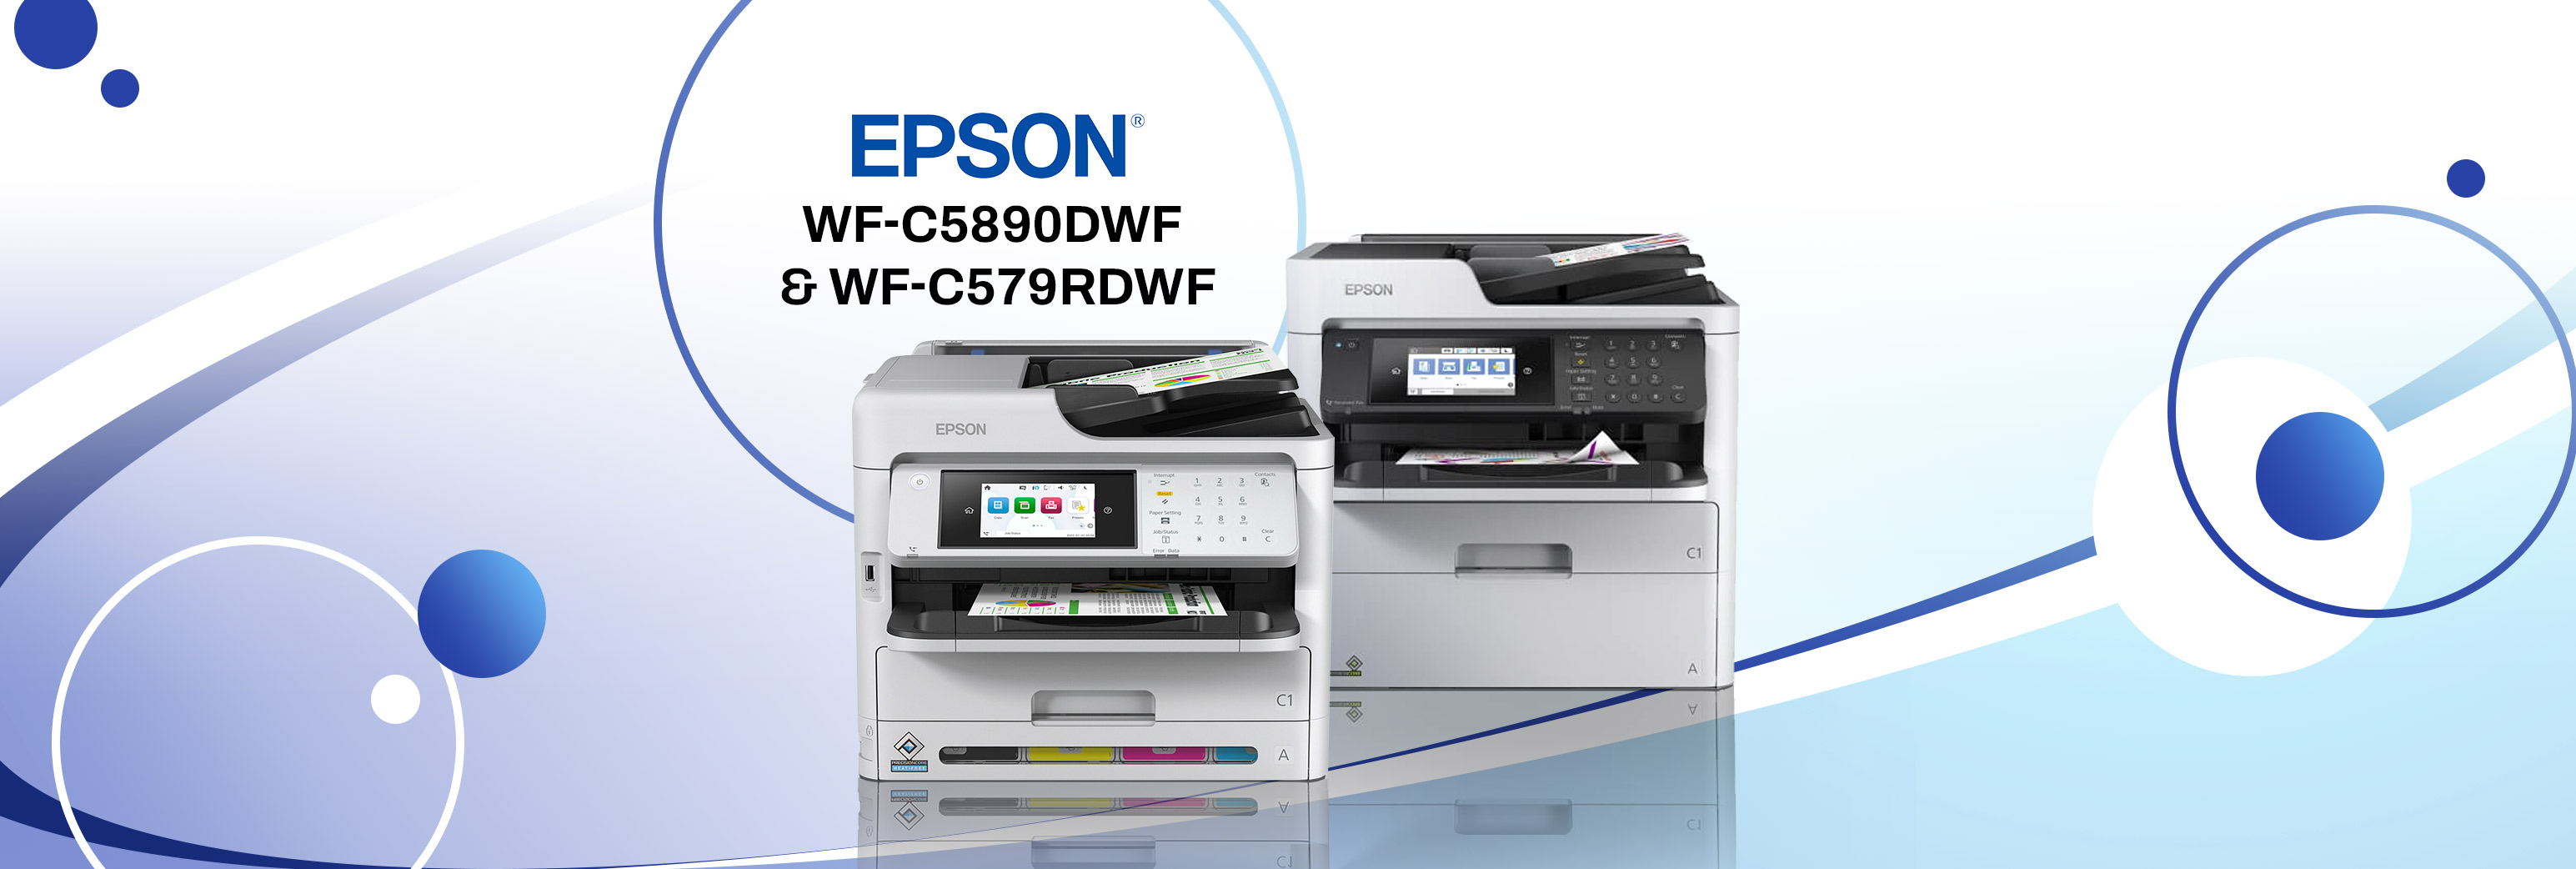 Découvrez les imprimantes EPSON WF-C5890dwf et EPSON WF-C579rdwf